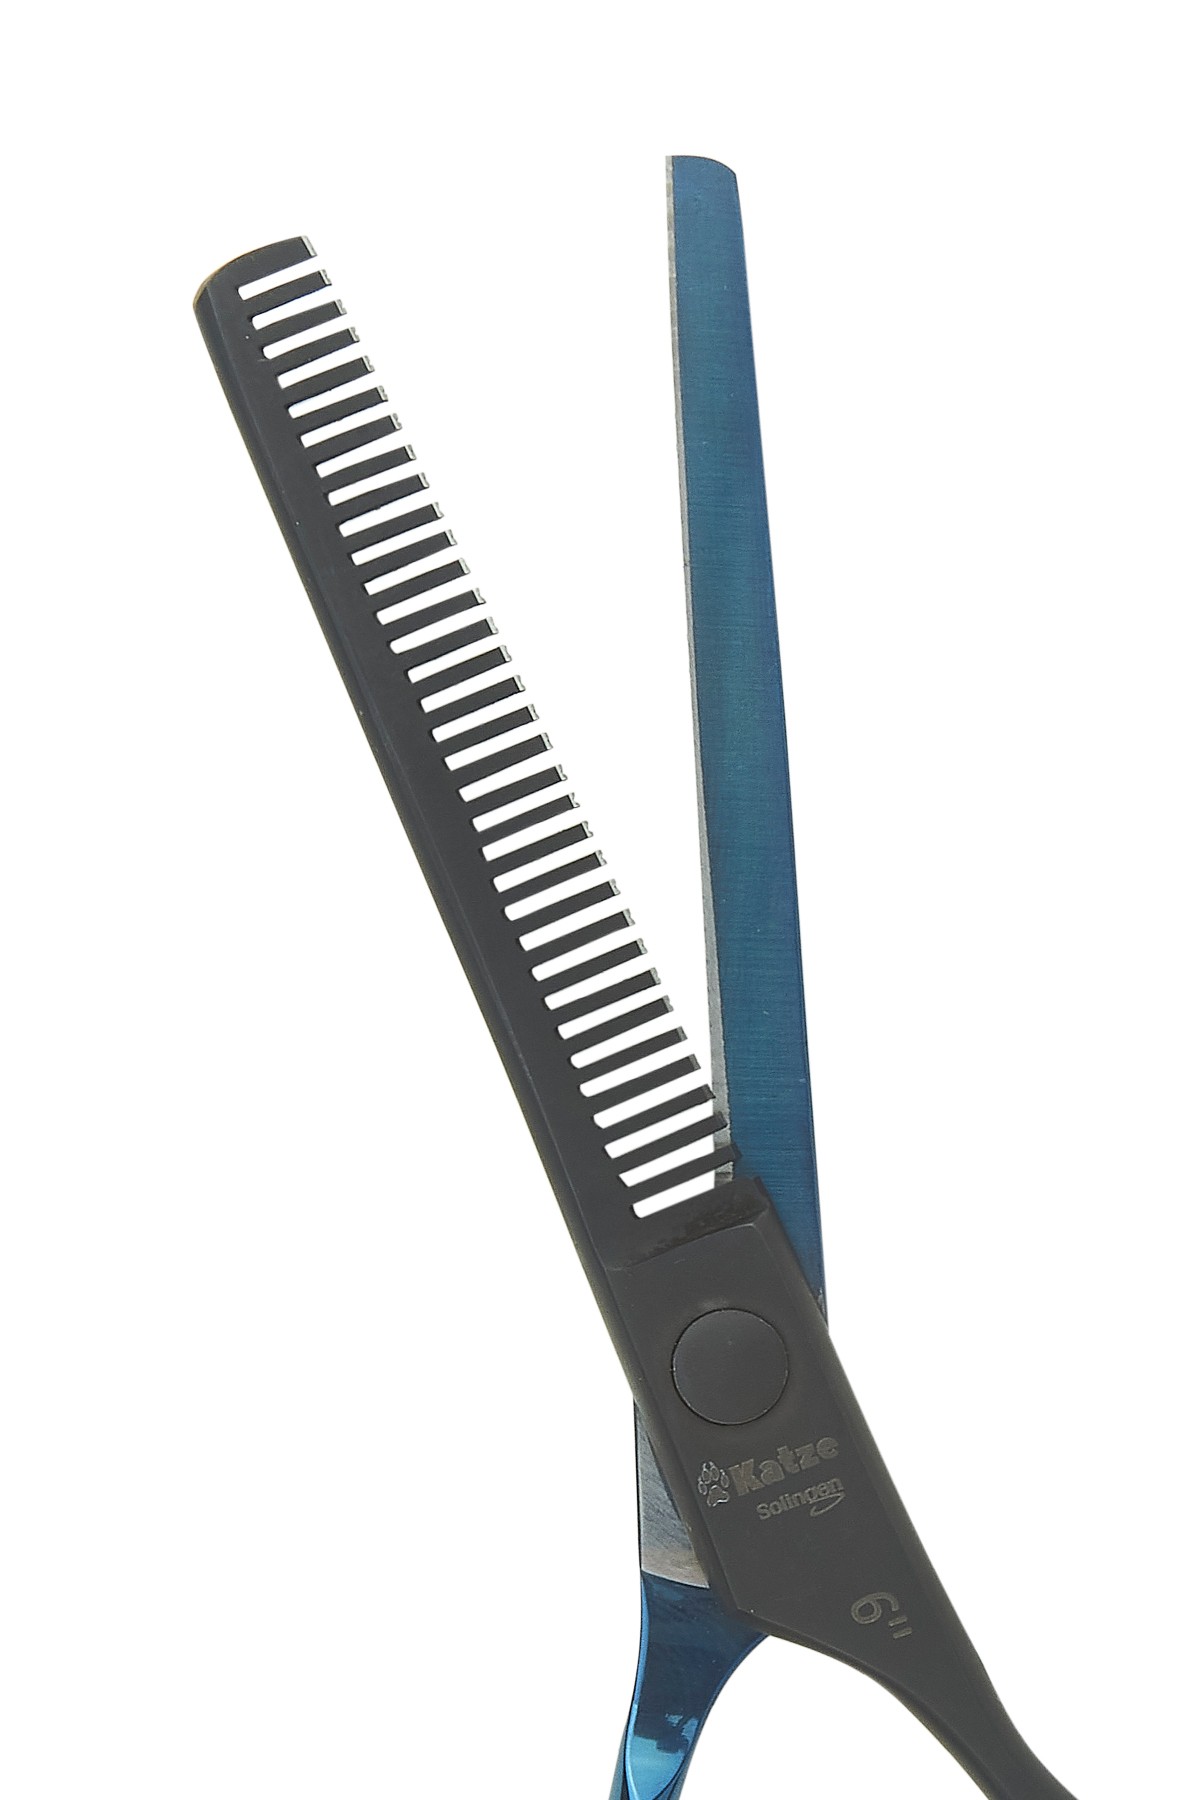 Katze 1030-6029 J1 Serisi 6" Saç Kesim Ara Makası Mavi/Siyah